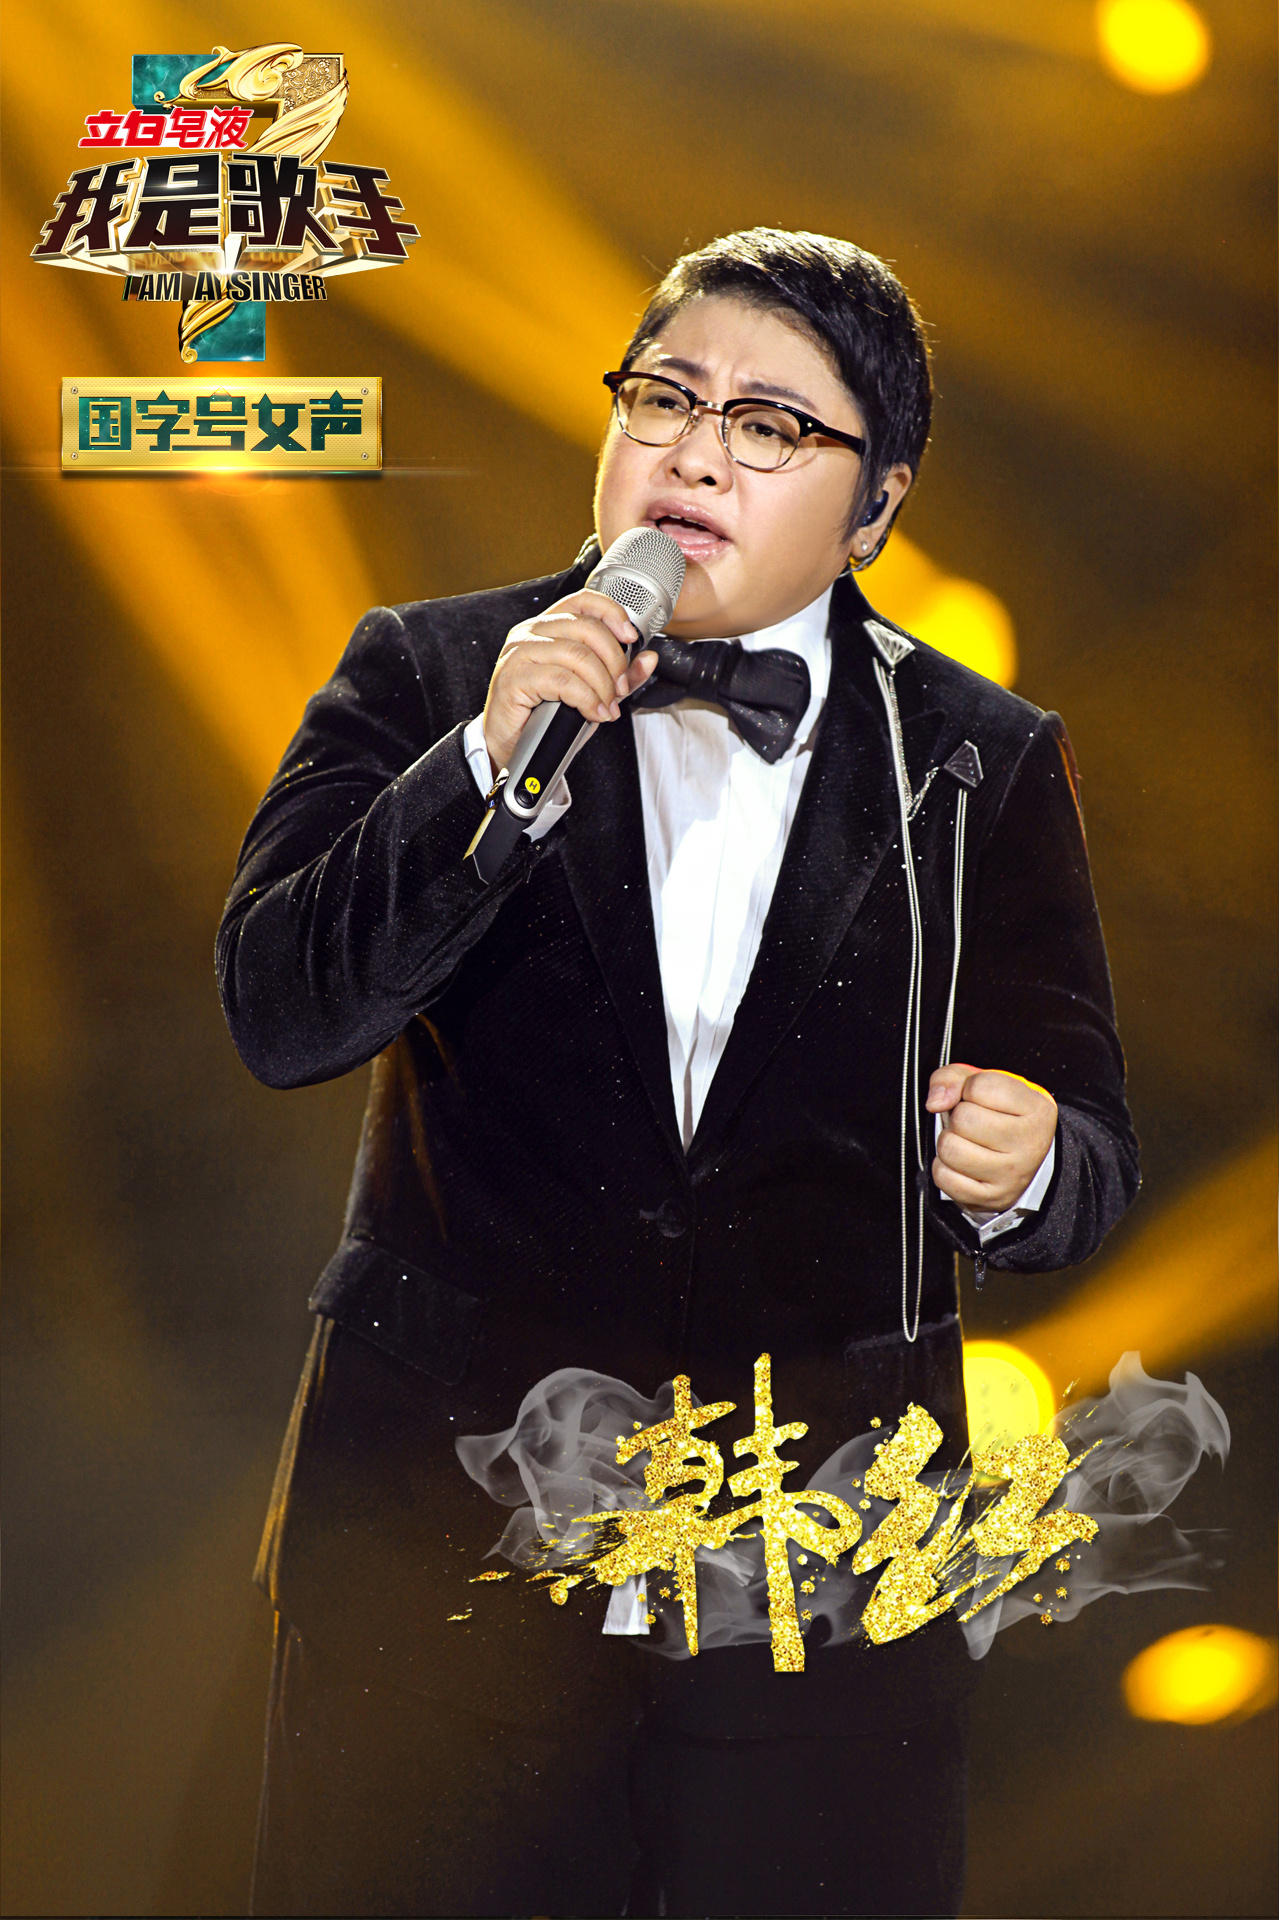 我是歌手第一季于2013年1月18日起于湖南卫视每周五晚2200播出,羽泉